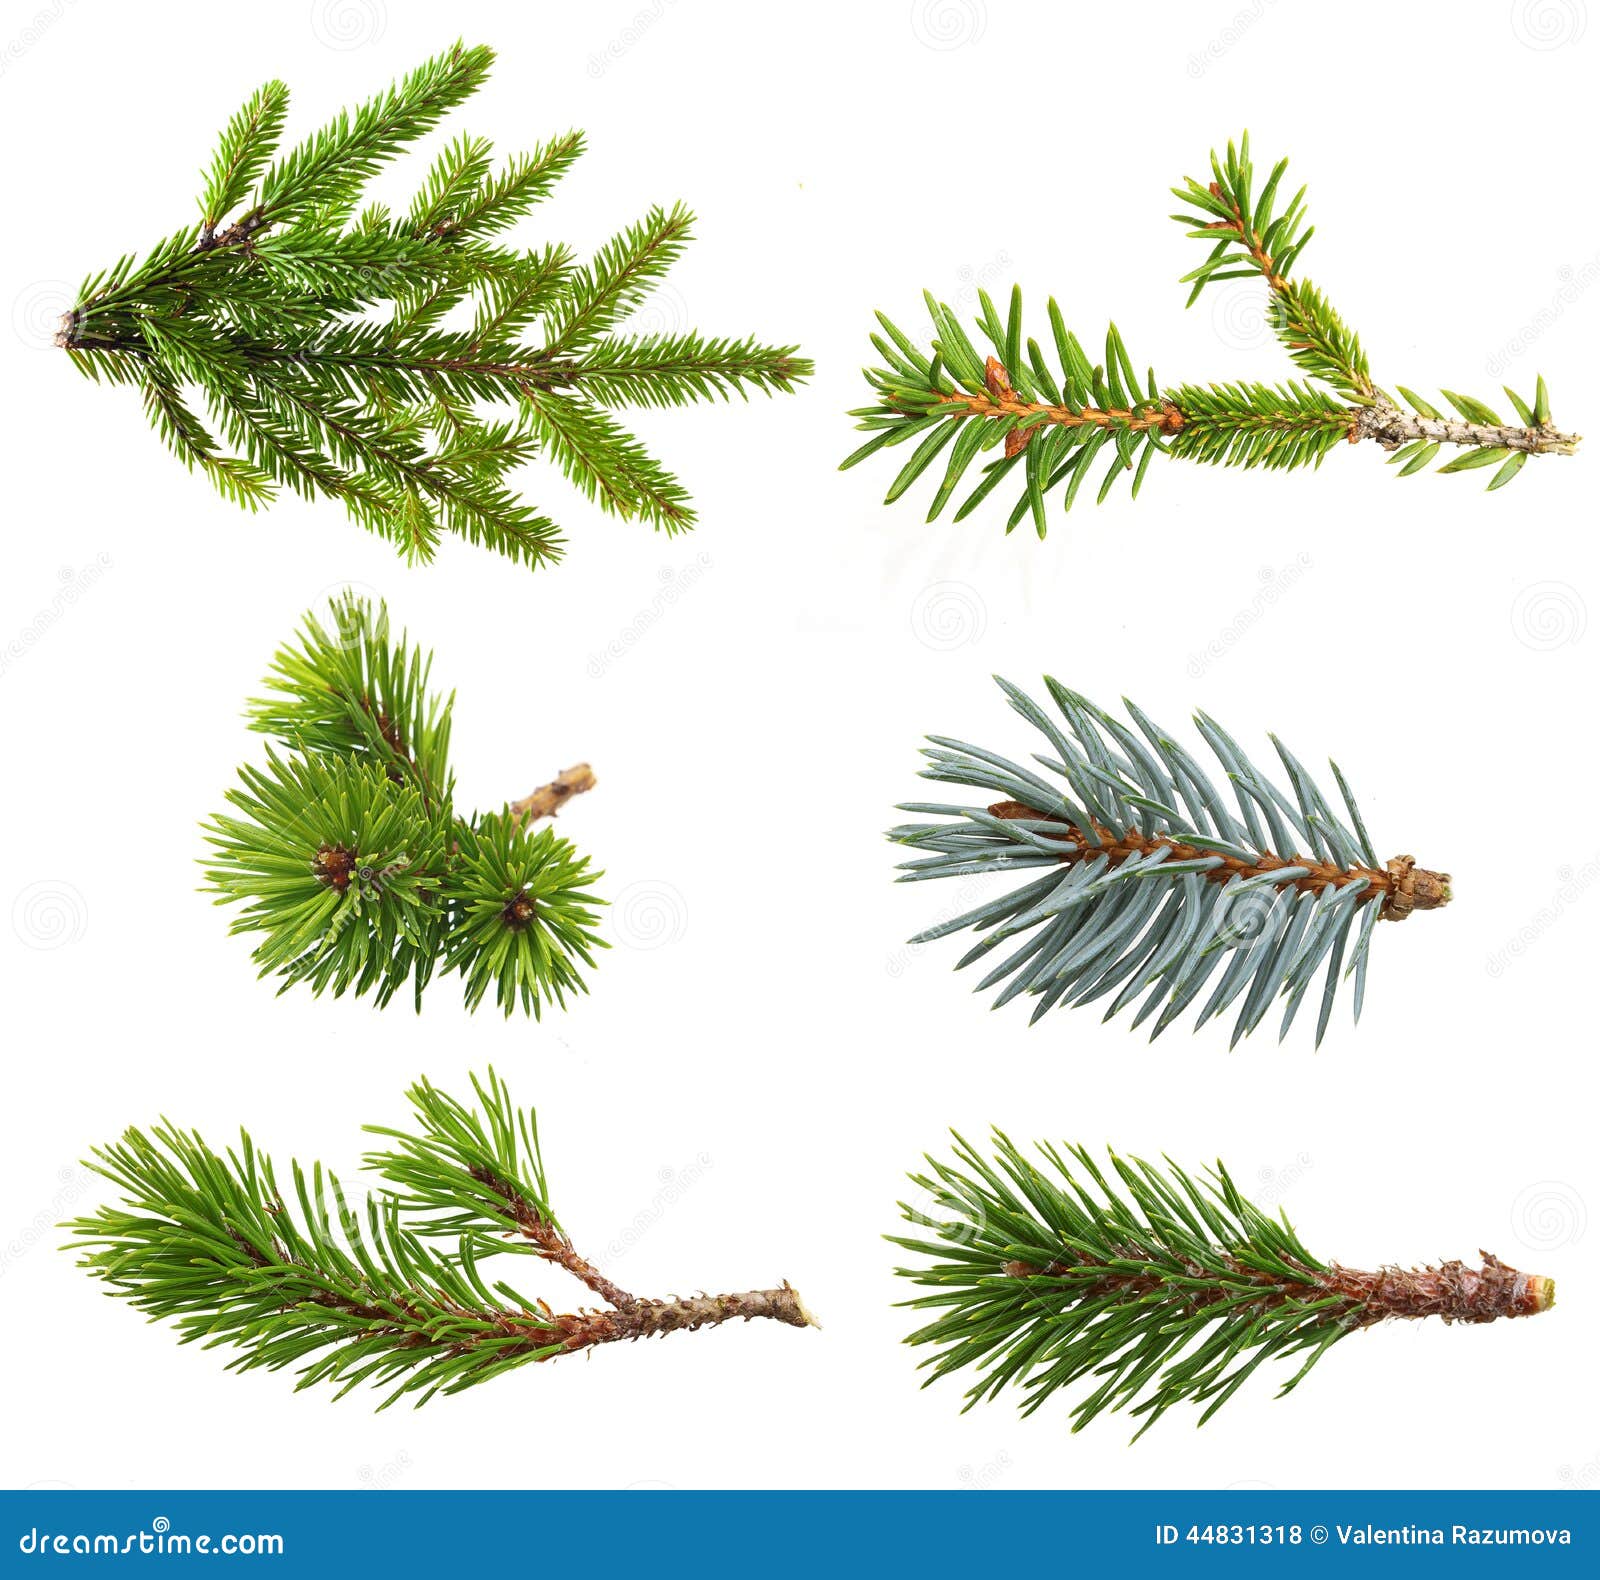 fir tree branch set